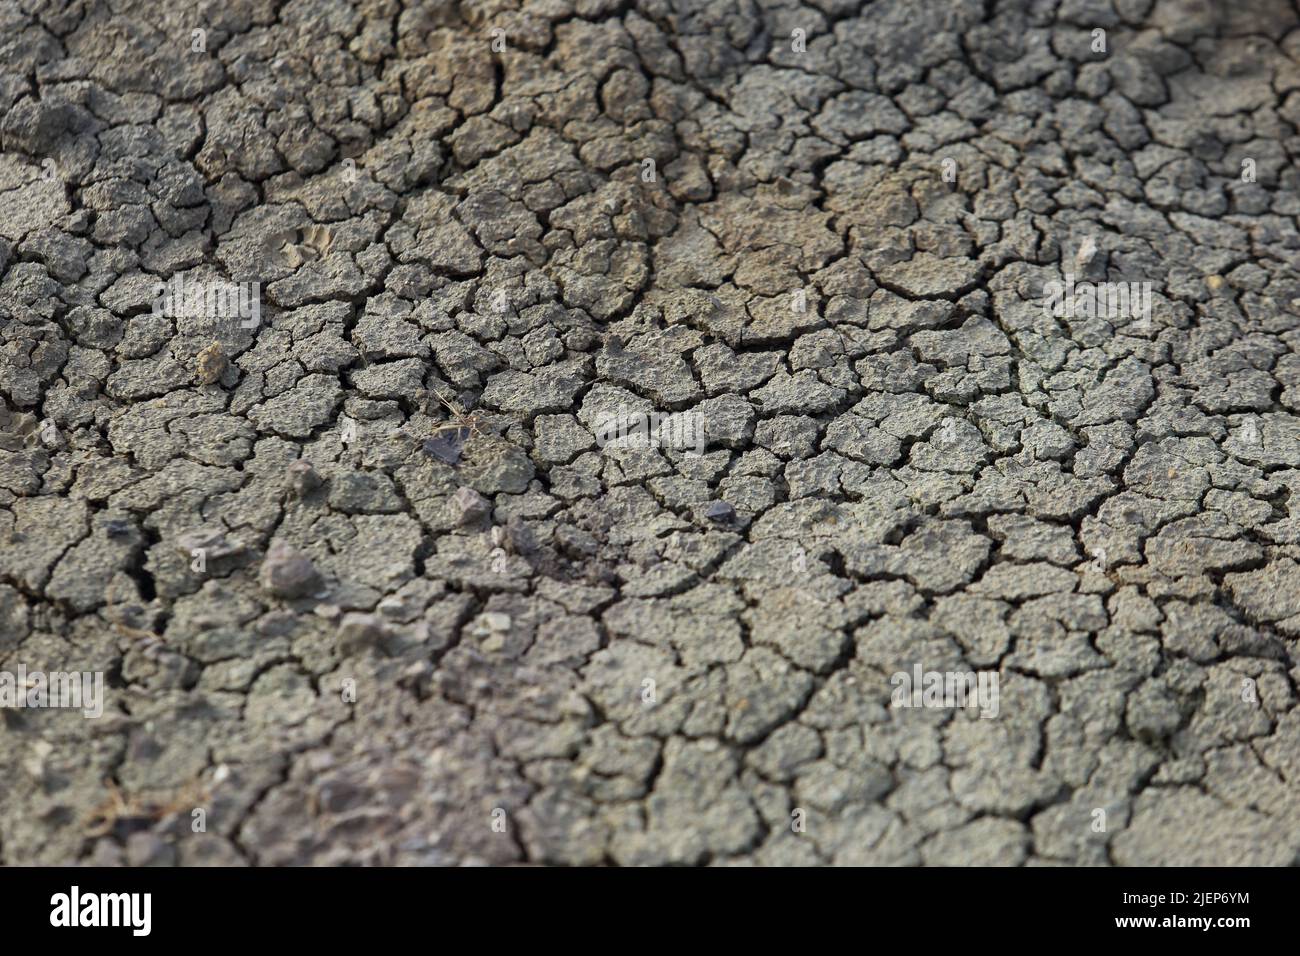 sequía - tierra seca sin agua Foto de stock